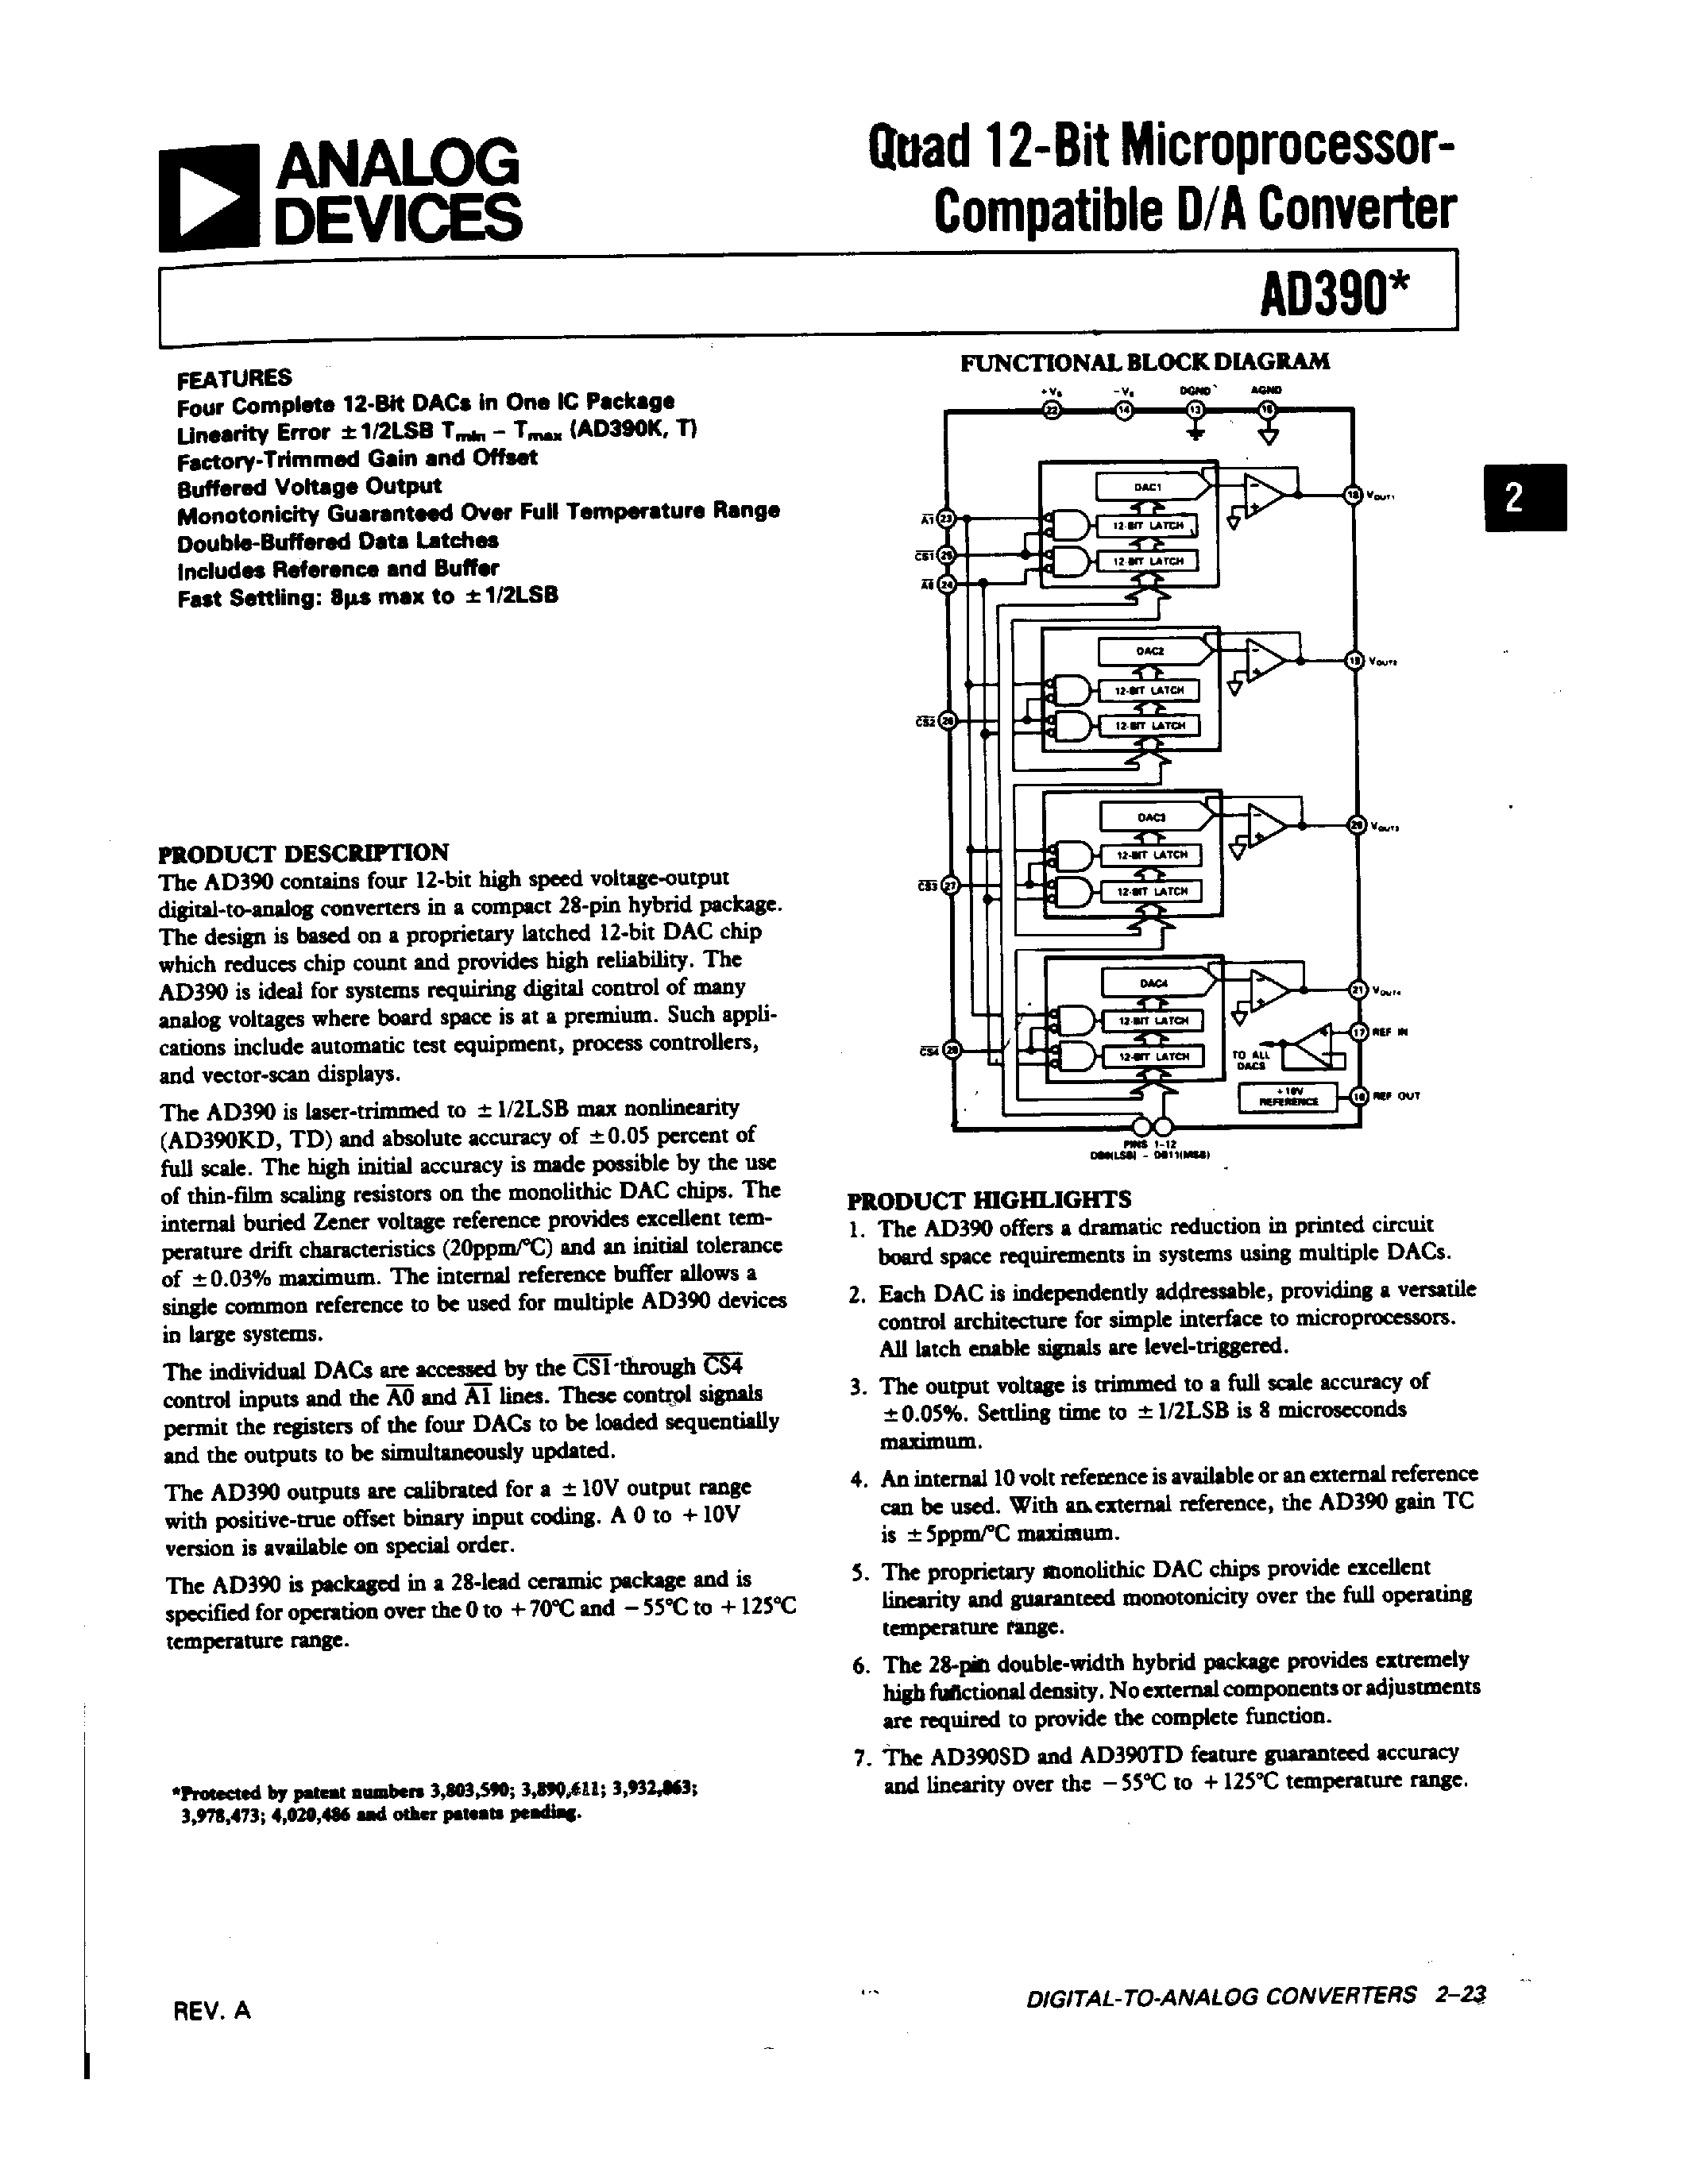 Даташит AD390JD - Quad 12-Bit Microprocessor-Compatible D/A Converter страница 1